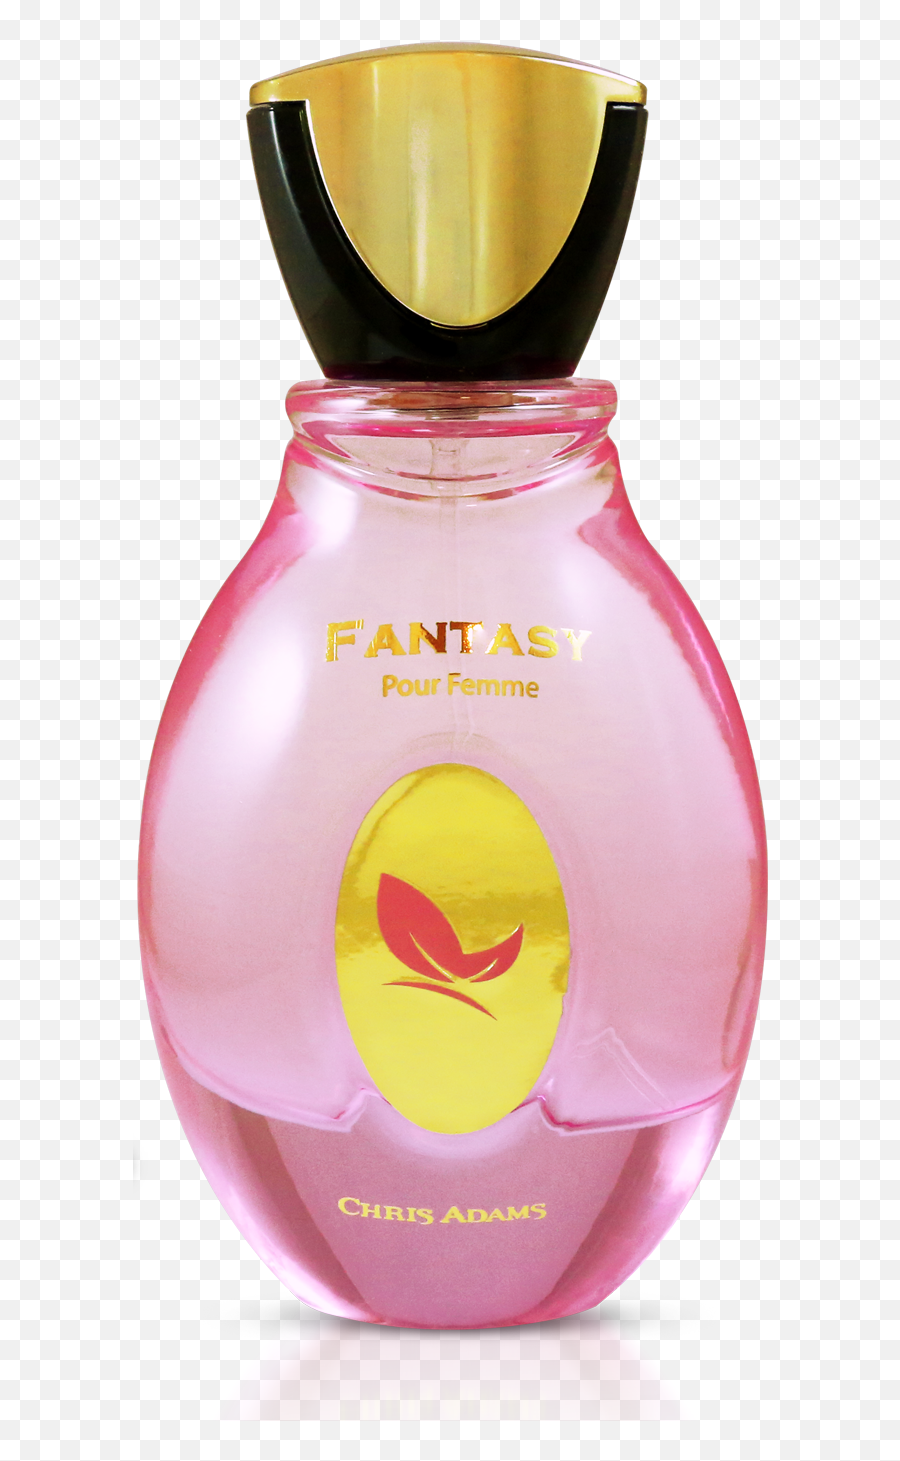 Fantasy 100ml Spray Perfume - For Women Emoji,Emotions Perfume